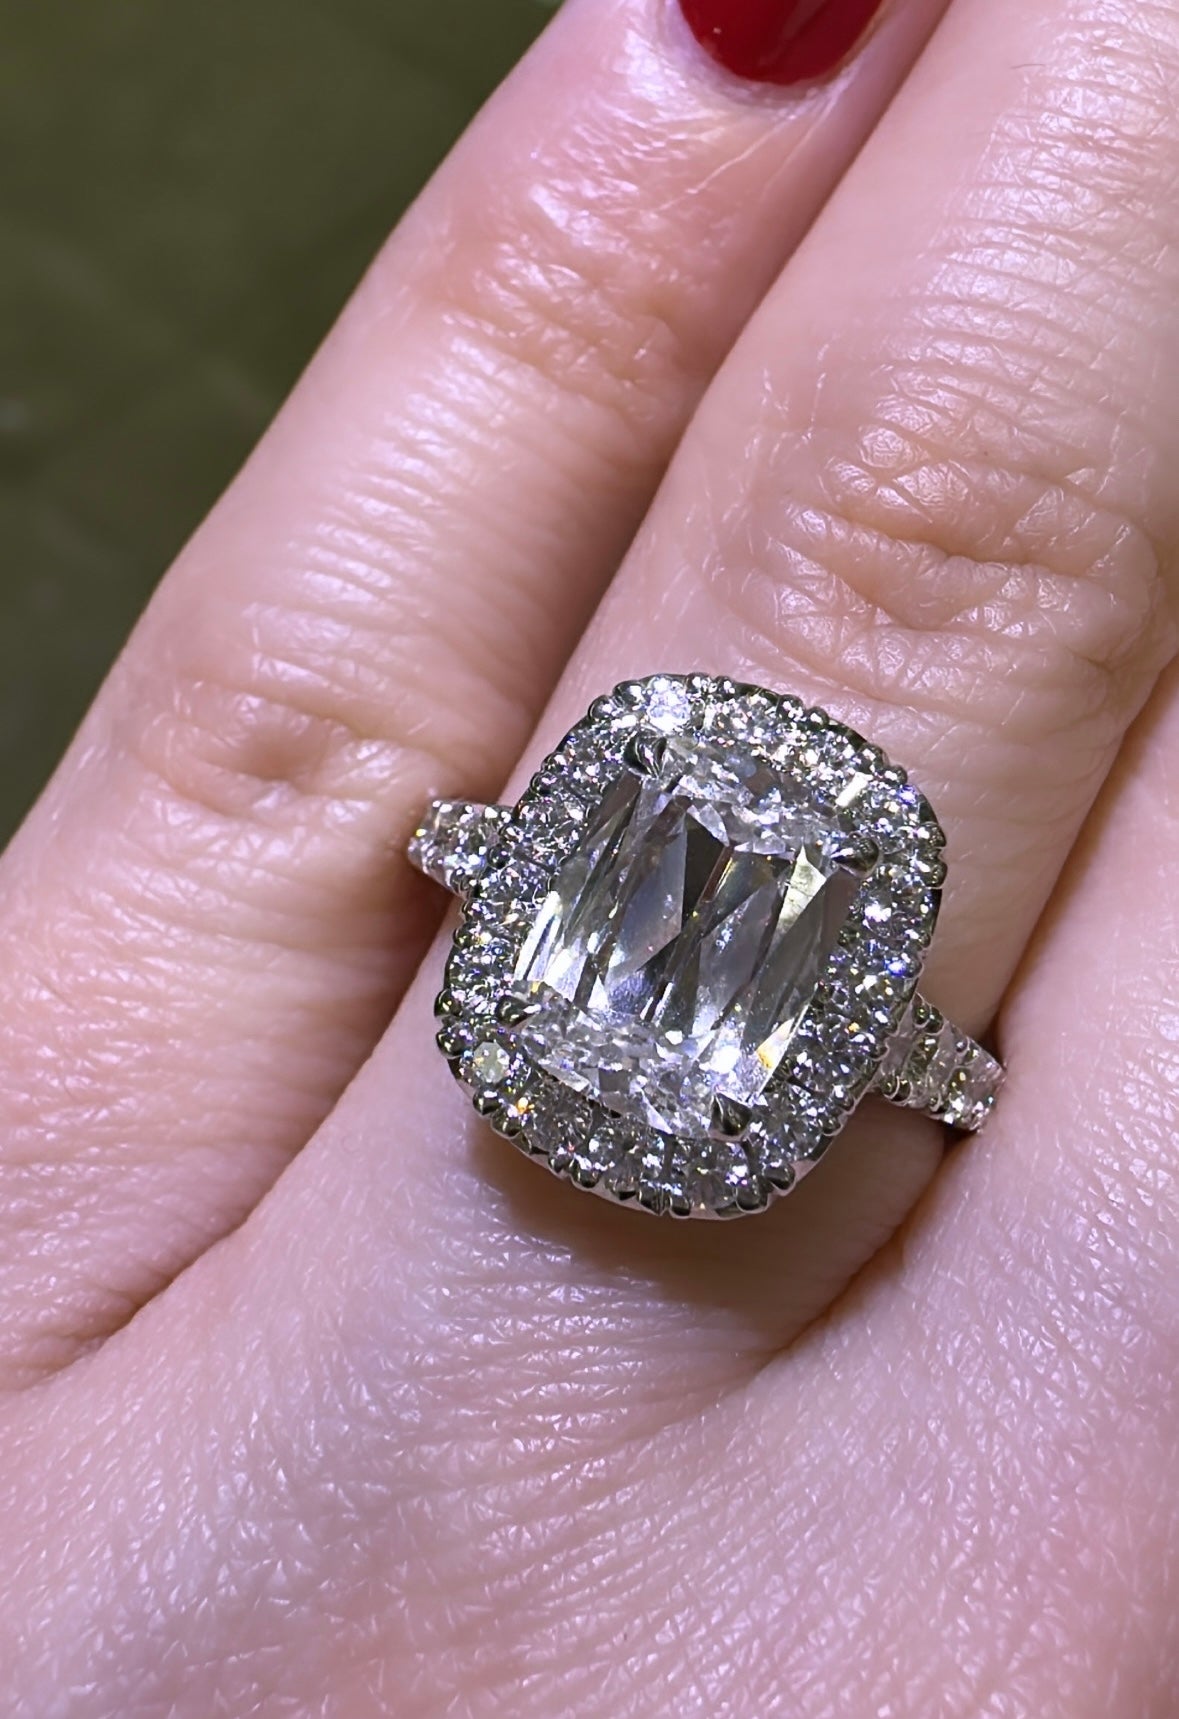 Henri Daussi Designer Signed GIA Certified 3.15ct tw Cushion Halo Diamond Ring